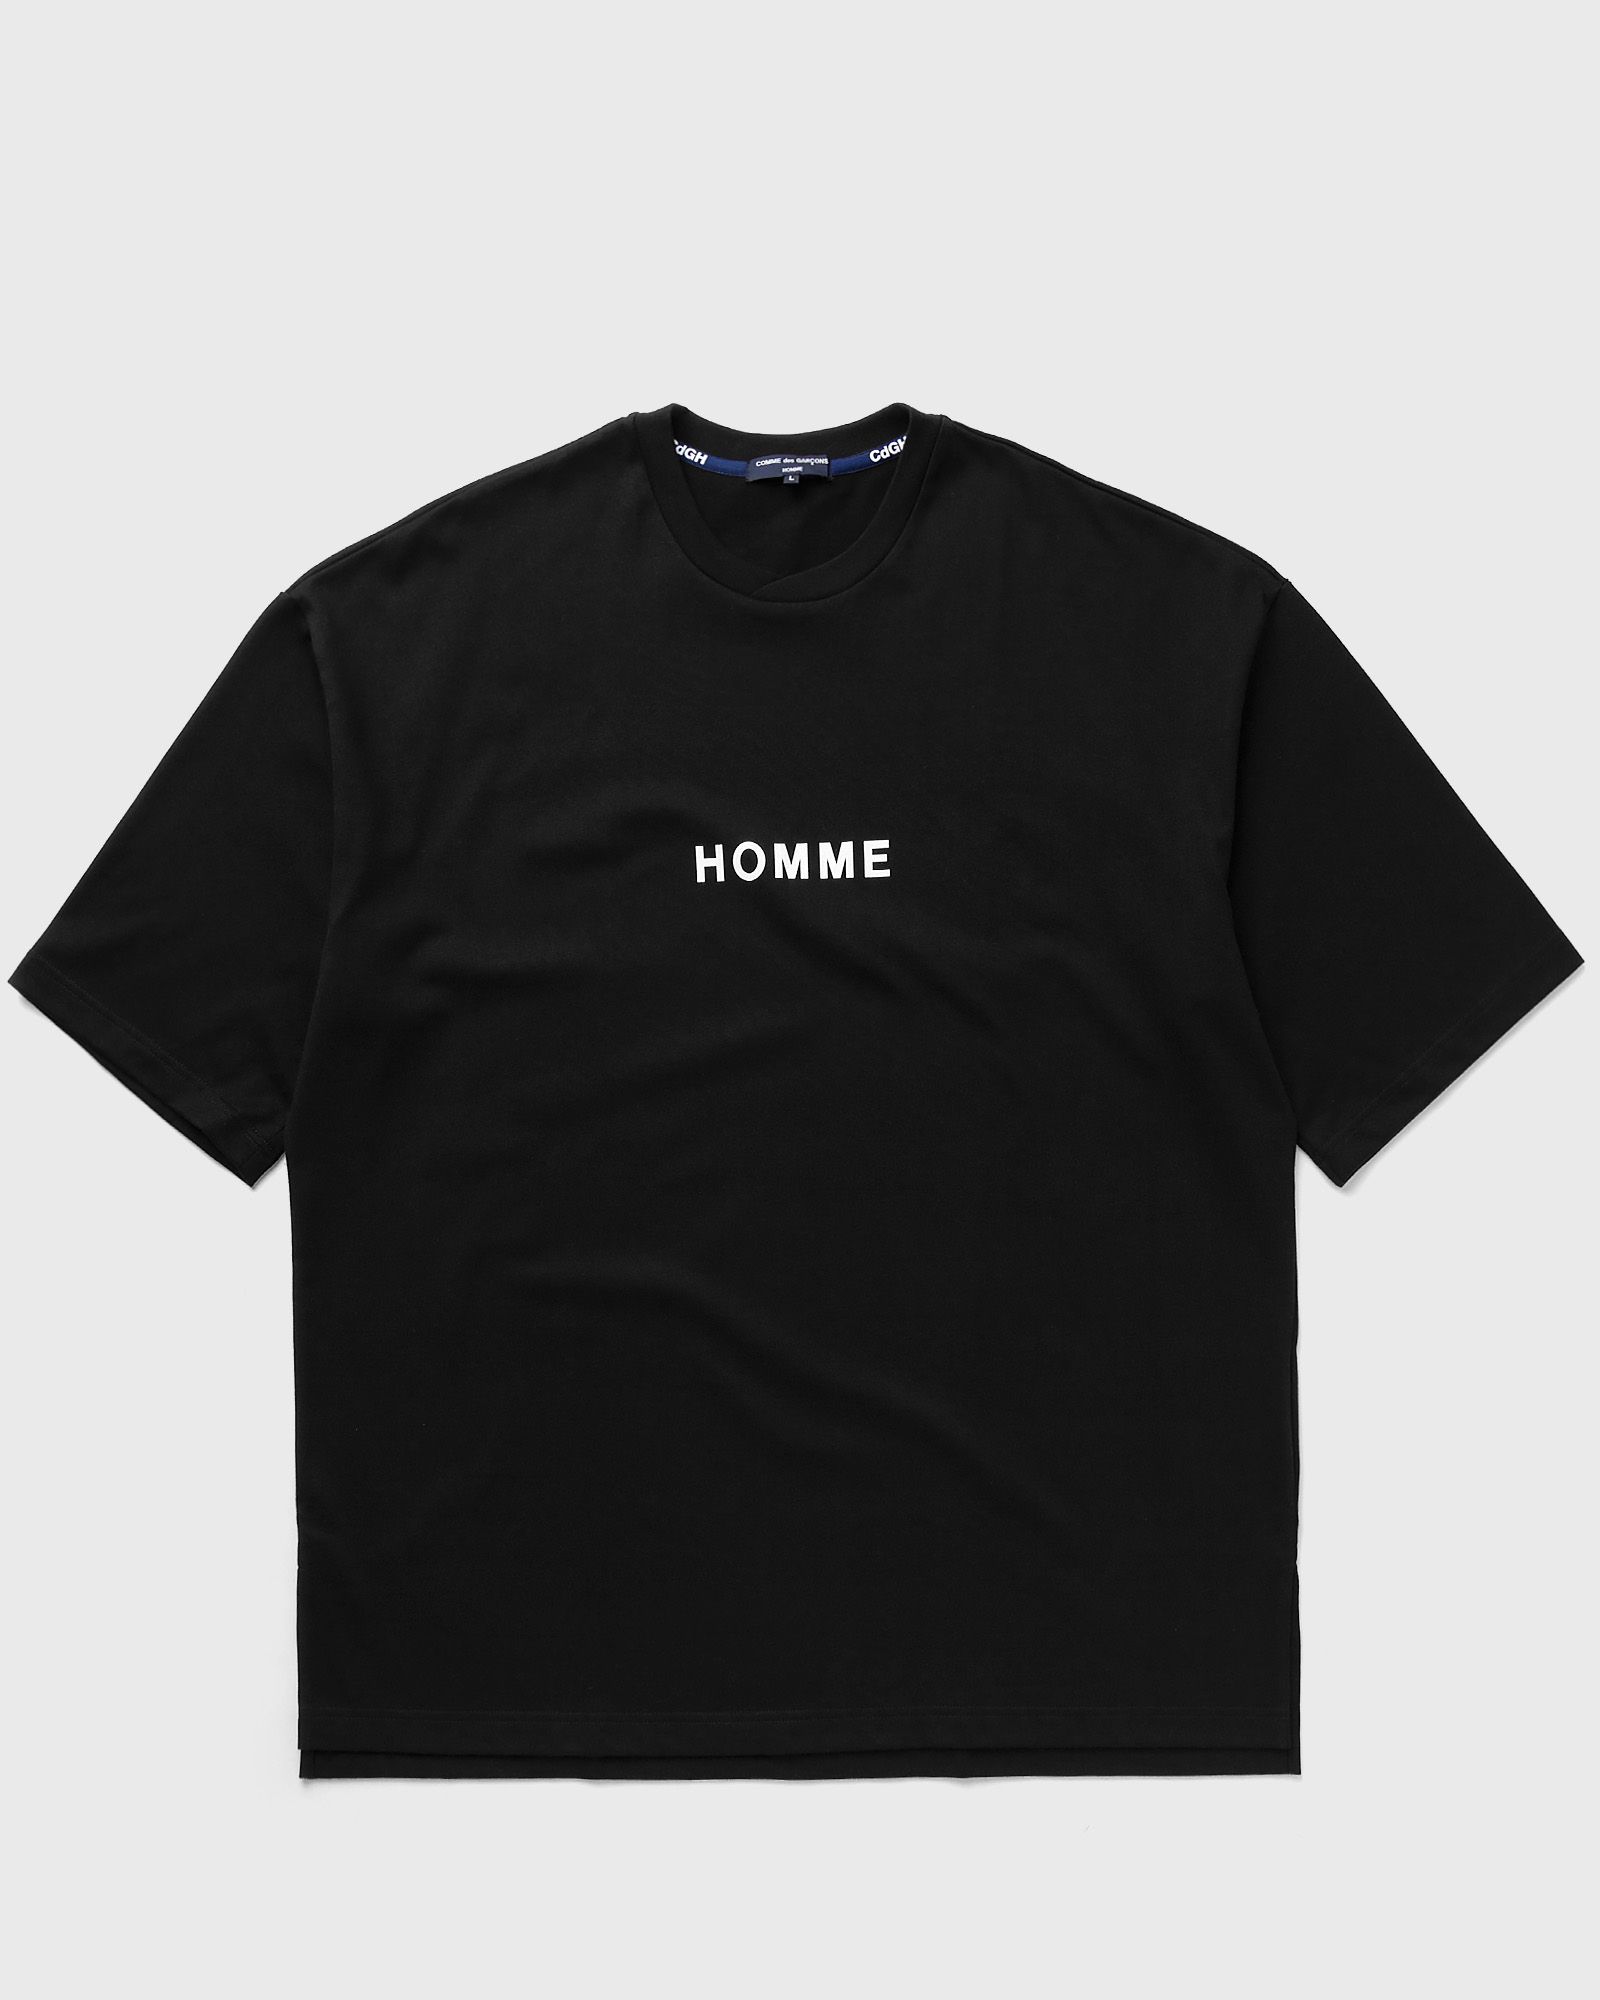 Comme des Garçons Homme - logo t-shirt men shortsleeves black in größe:l